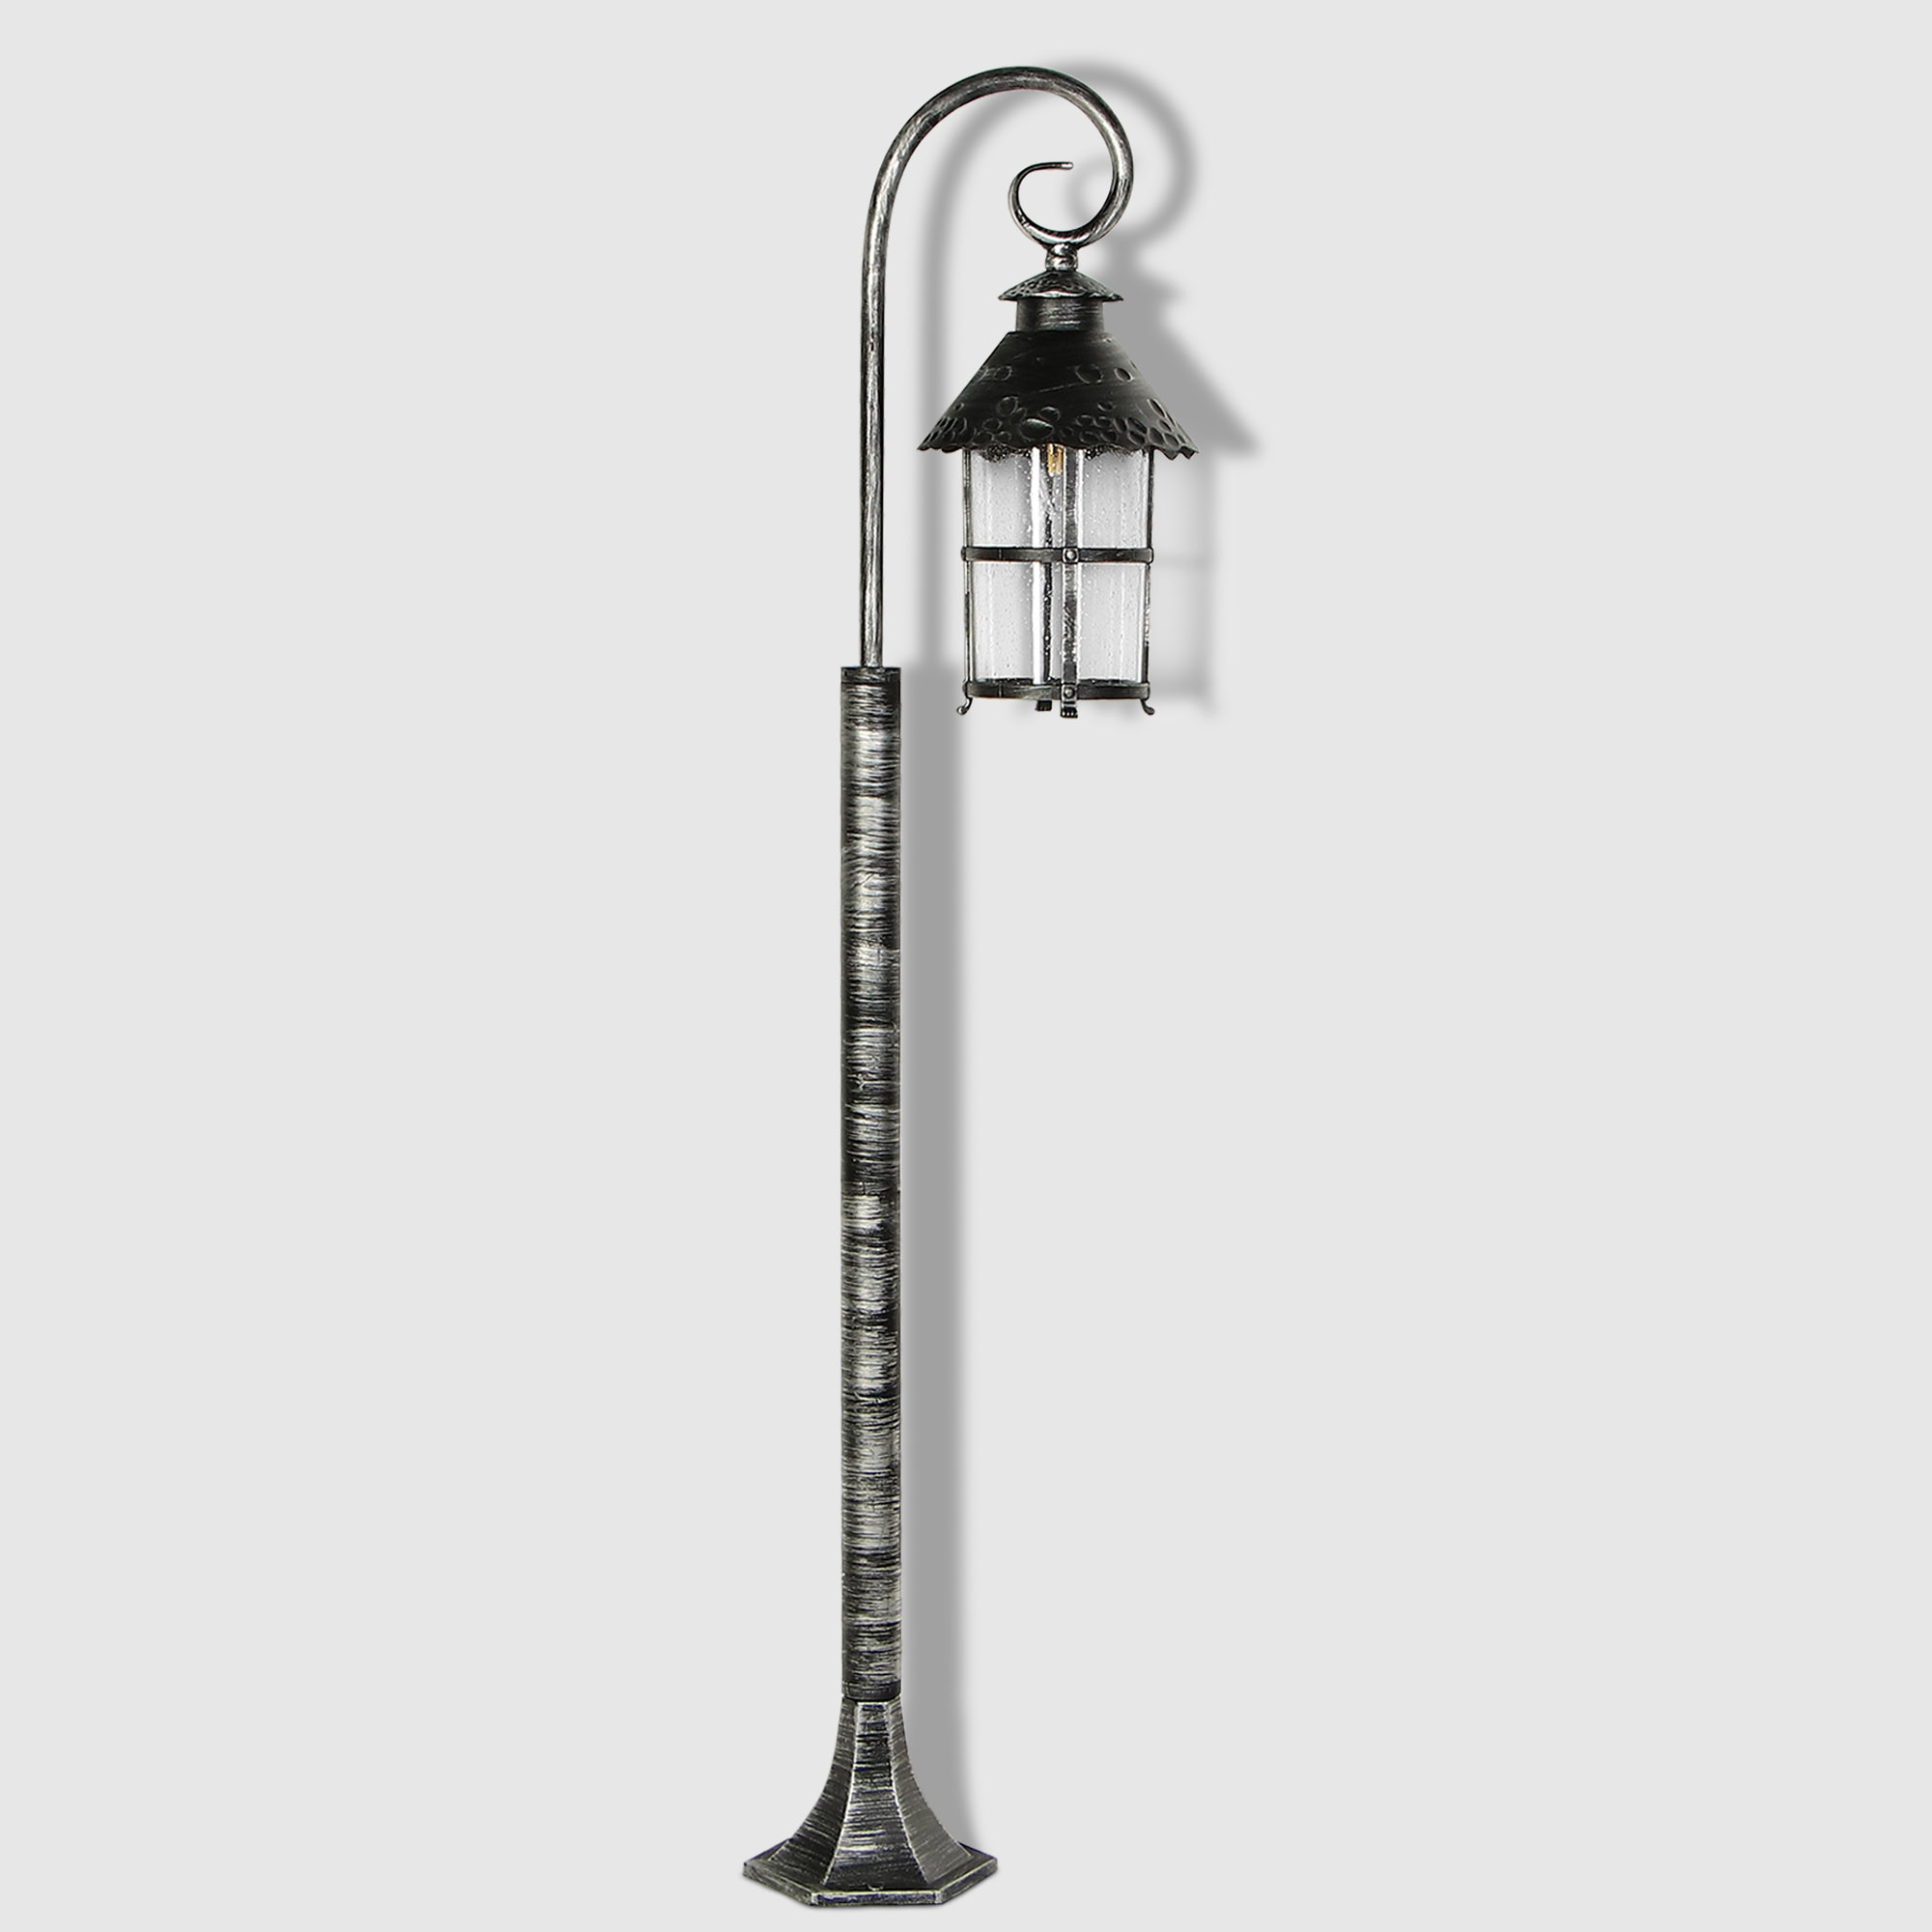 Светильник садовый Amber Lamp 8737 напольный IP23 E27 100Вт, чёрное серебро, цвет прозрачный, чёрное серебро - фото 1